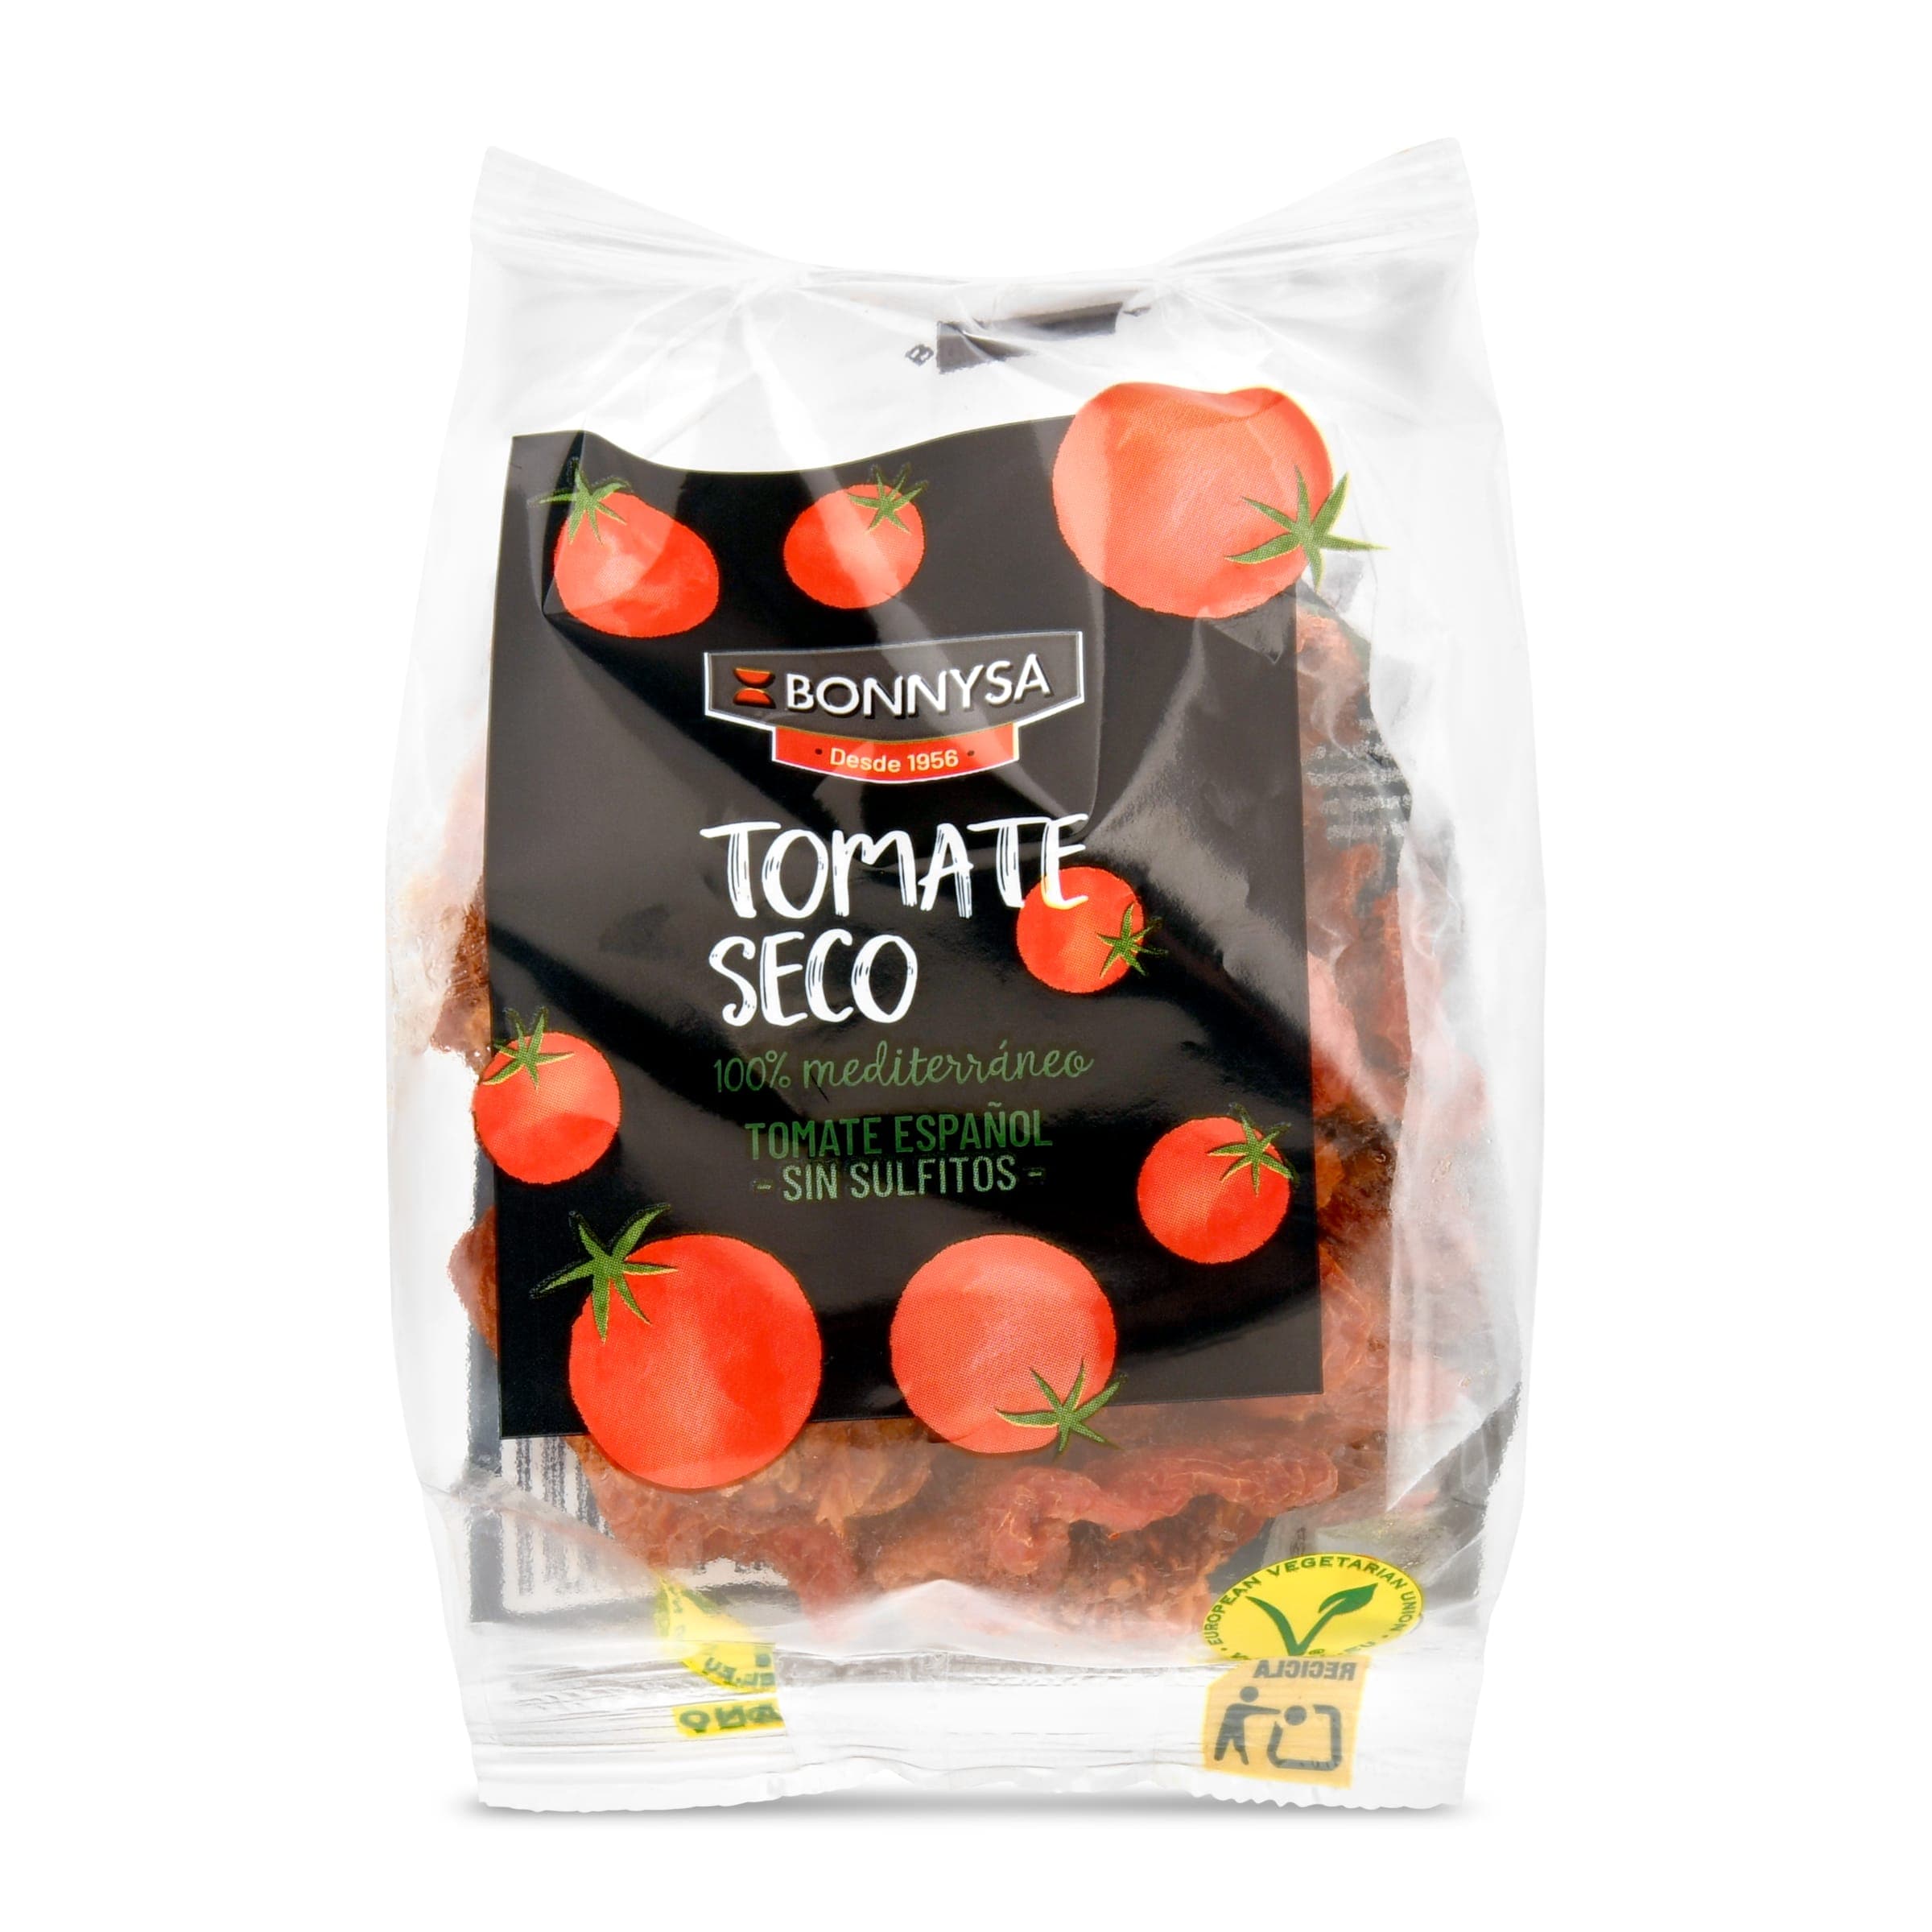 Tomate seco bolsa 80 g - Supermercados DIA